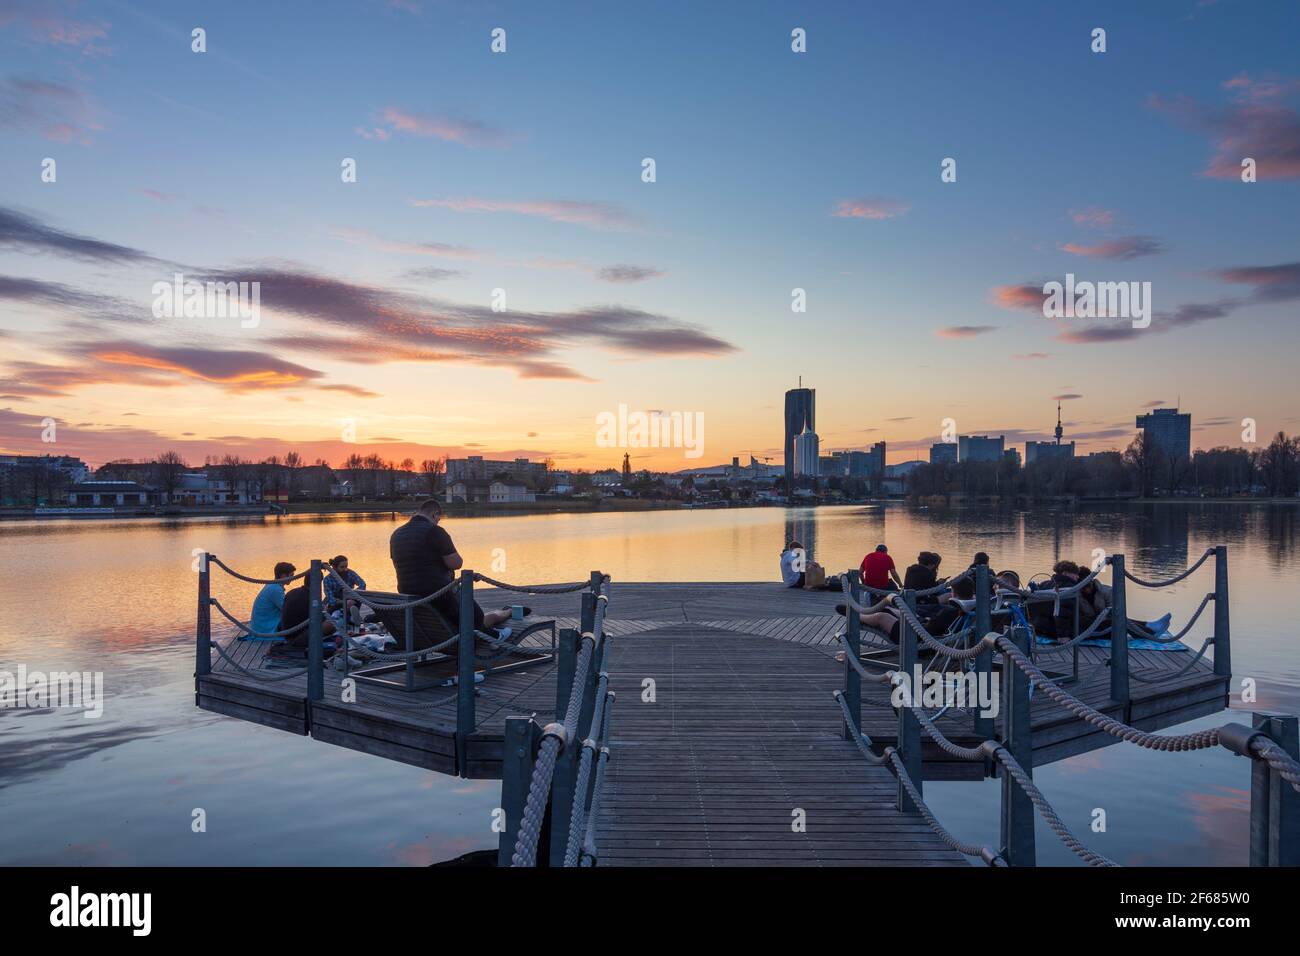 Wien, Vienna: I giovani su una piattaforma in una festa sopra il lago di ossbow Alte Donau (Vecchio Danubio) al tramonto fiero, gli edifici di Donaucity, DC Tower 1, Coro Foto Stock